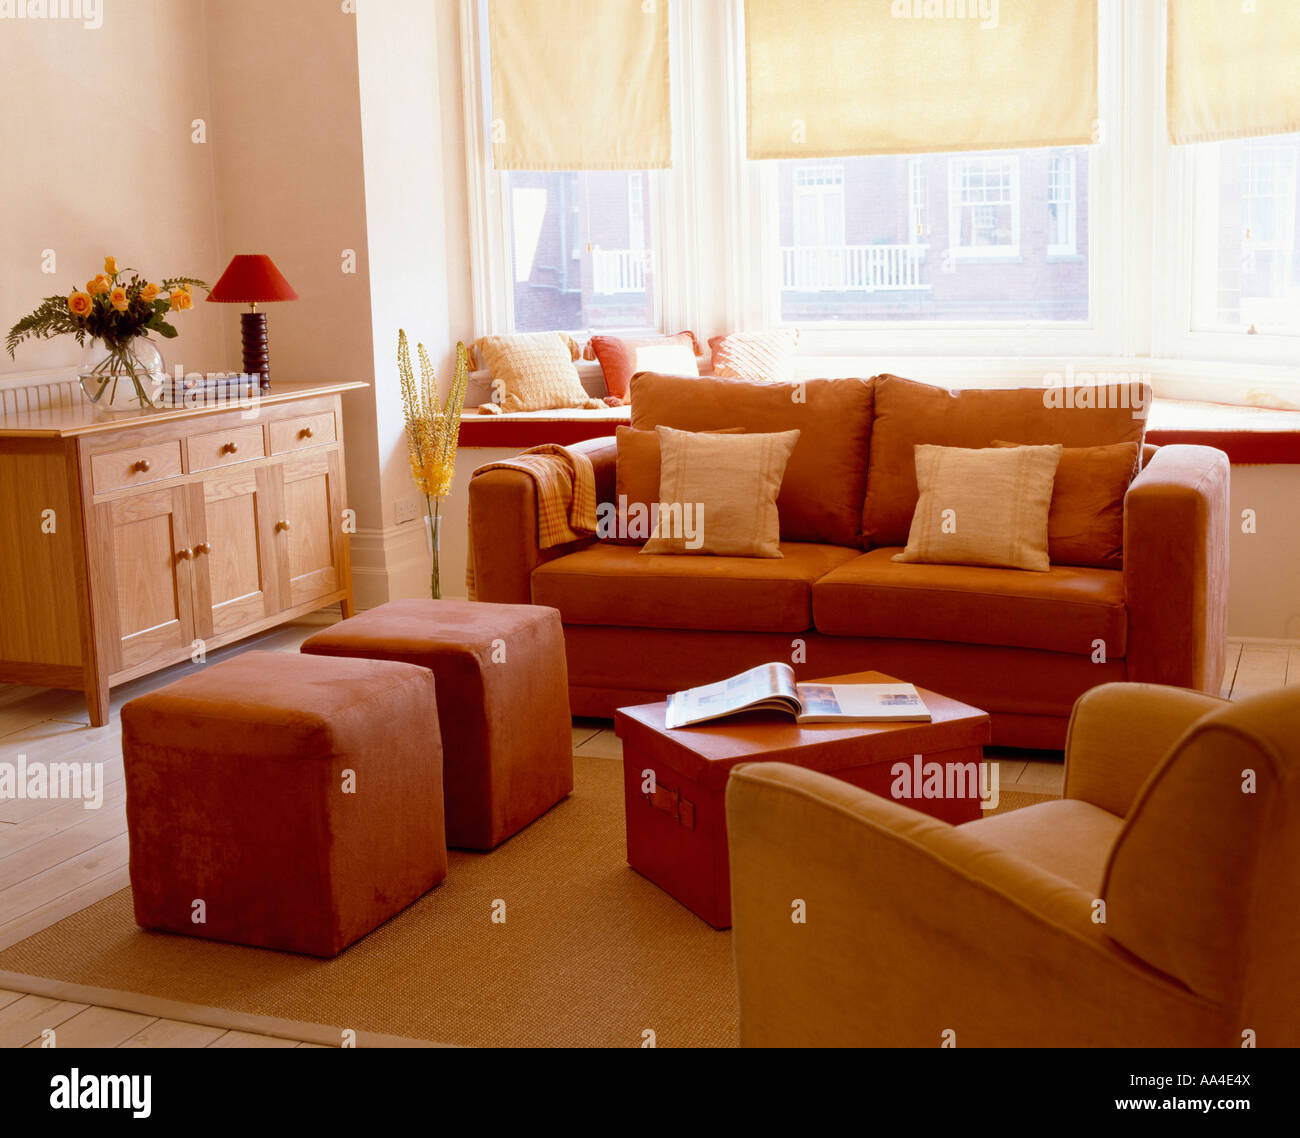 Modernes Wohnzimmer mit Terrakotta Sofa und gepolsterten Hocker und  cremefarbene Vorhänge an den Fenstern Stockfotografie - Alamy